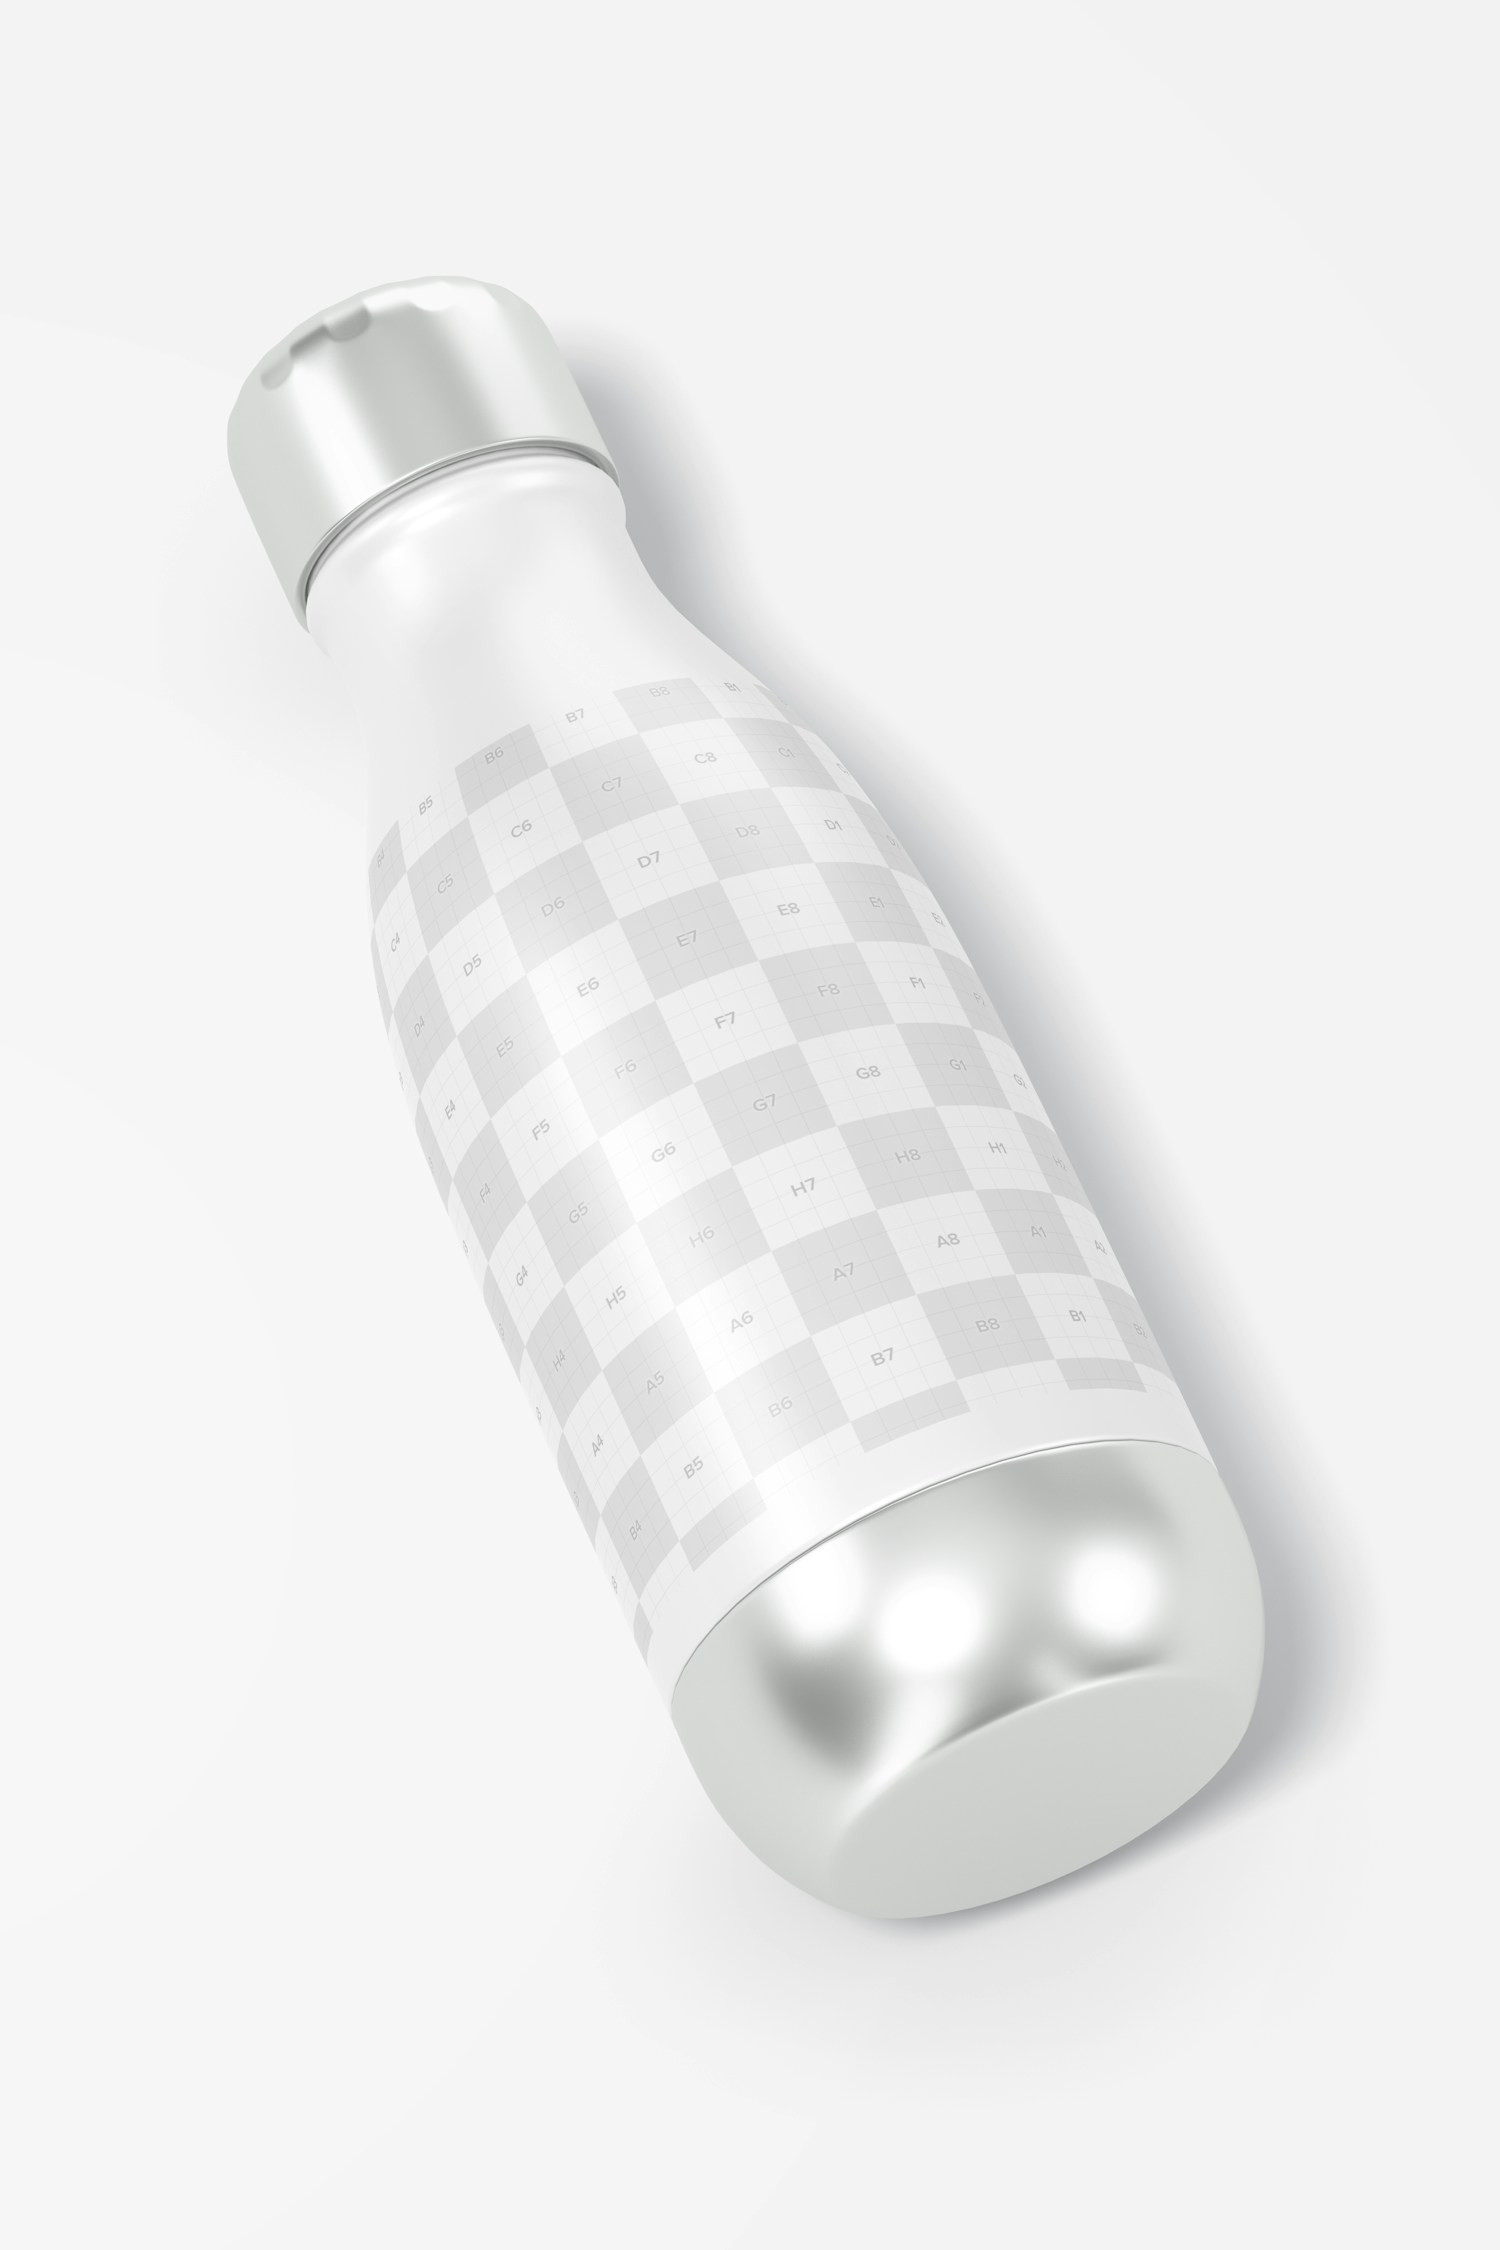 17 oz Metallic Water Bottle Mockup